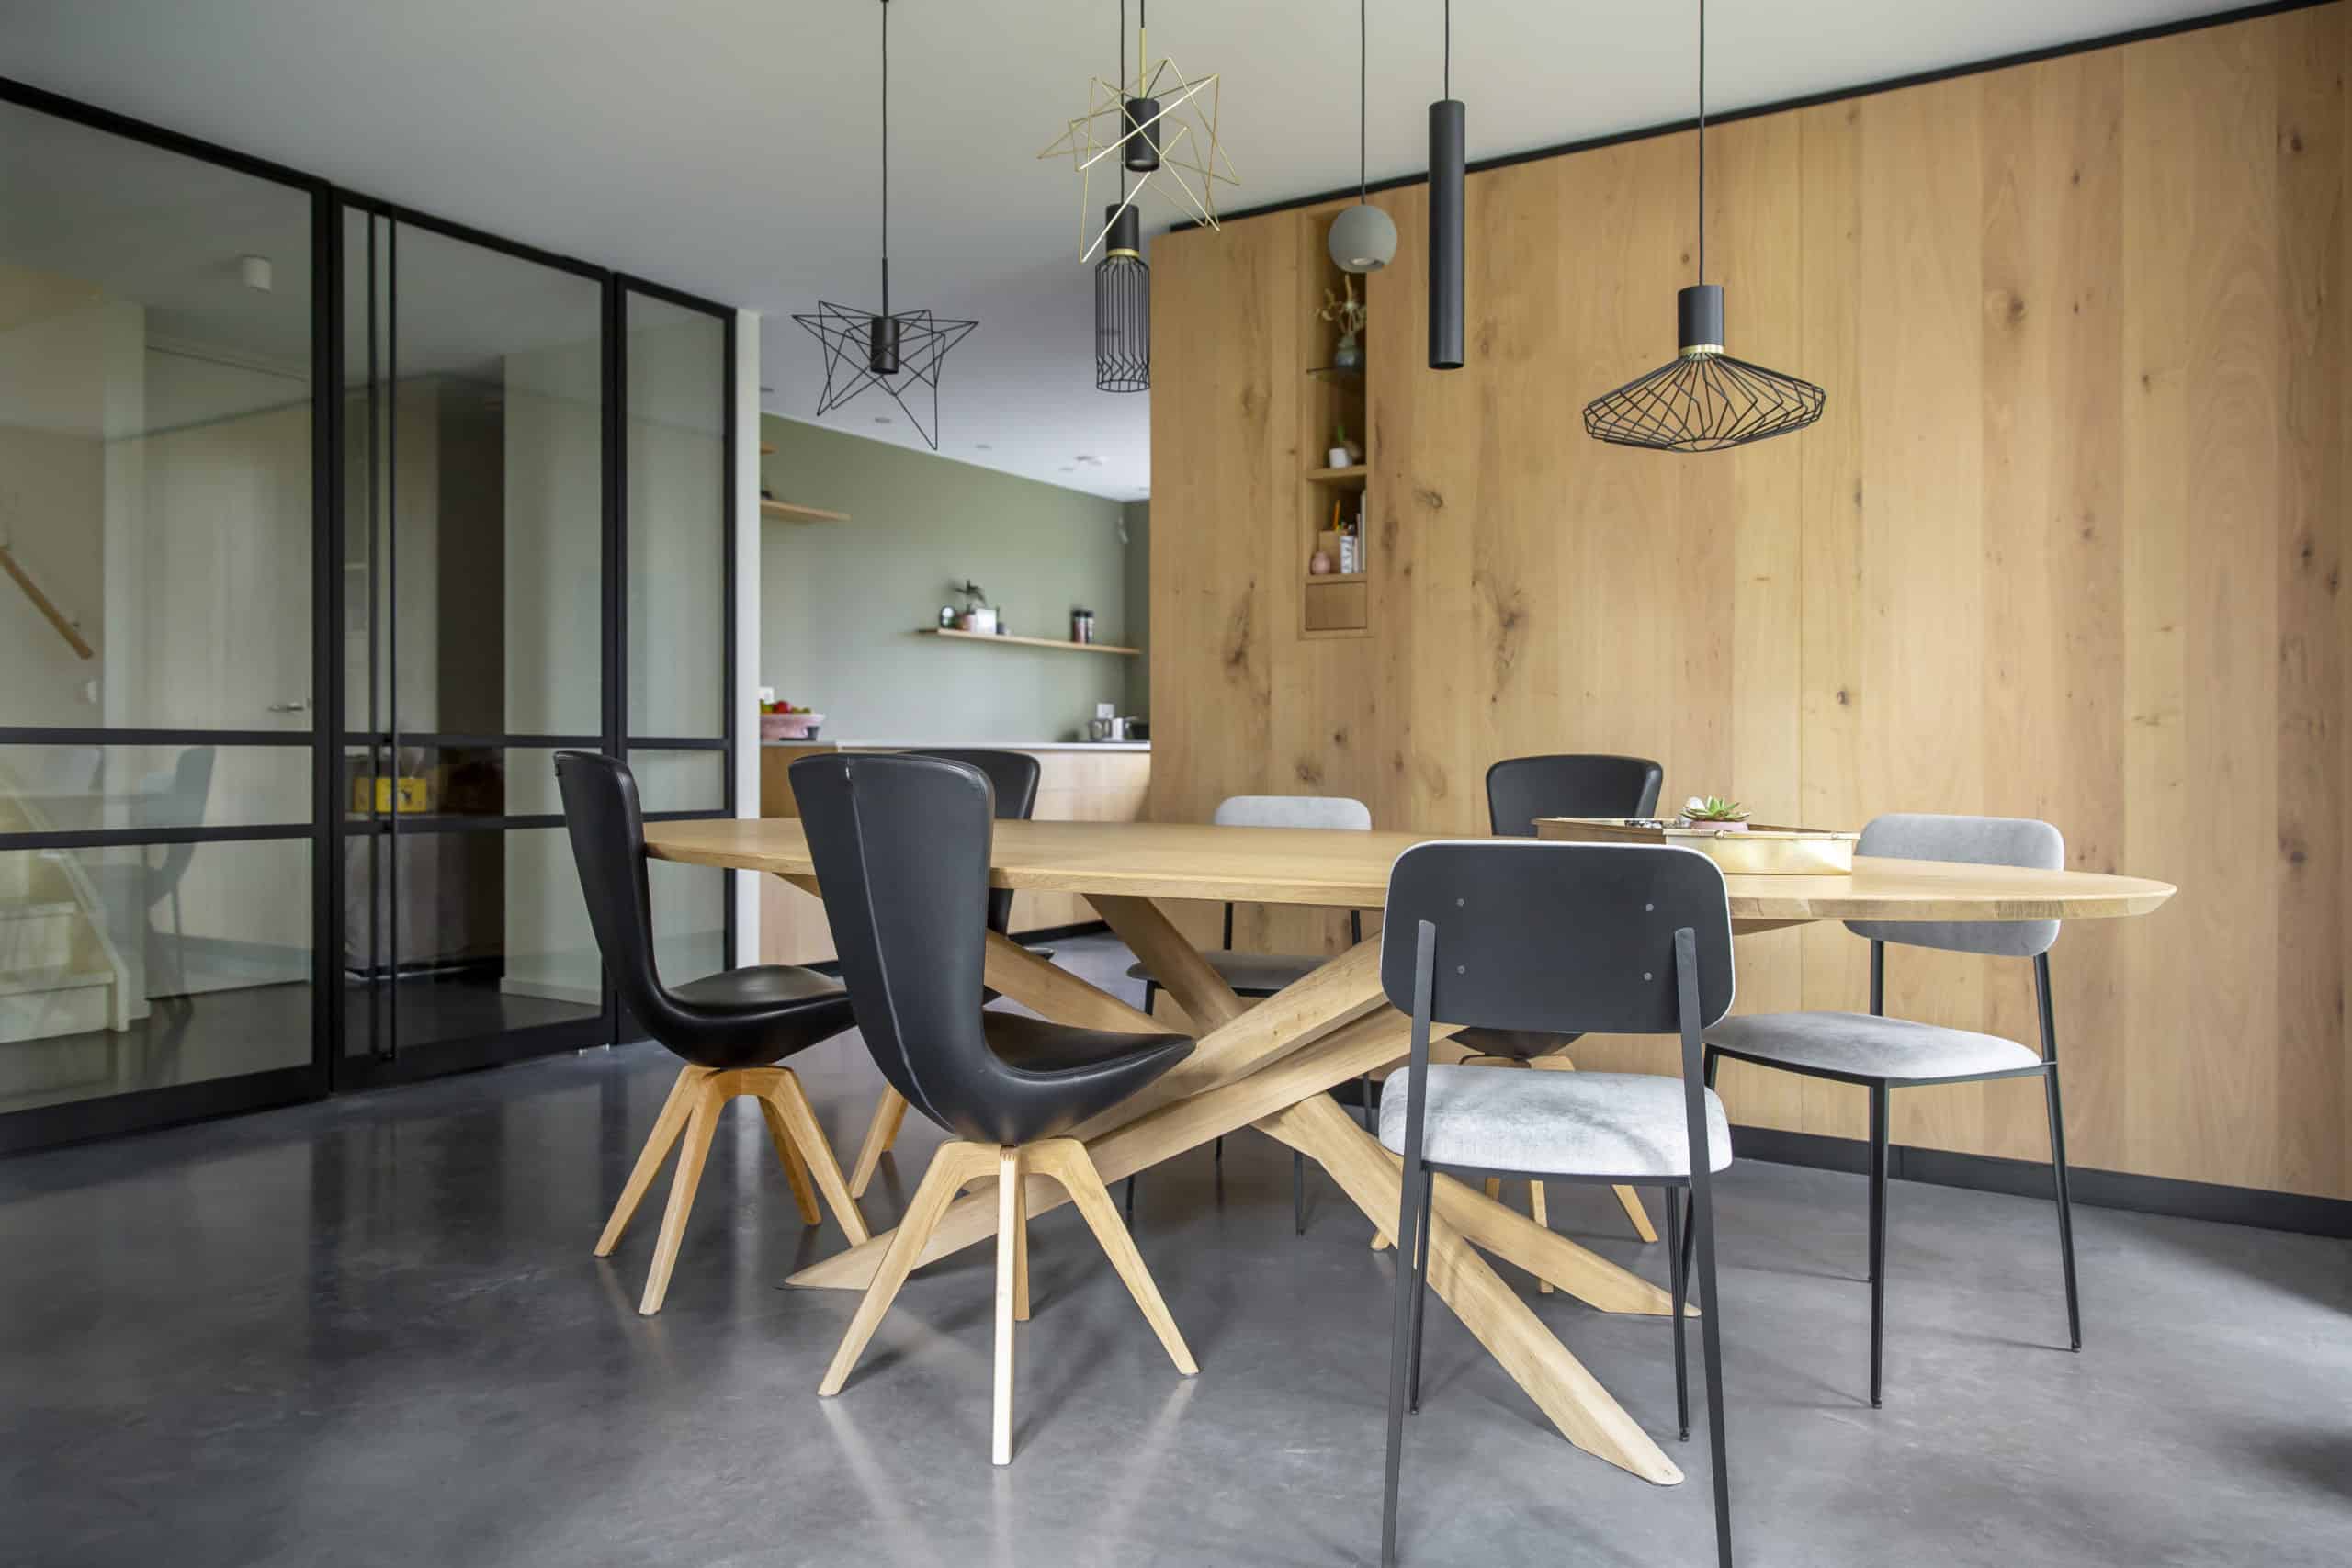 Gevlinderde betonvloer in de eetkamer in Brielle, gecombineerd met een houten tafel, zwarte stoelen en houten kastenwanden